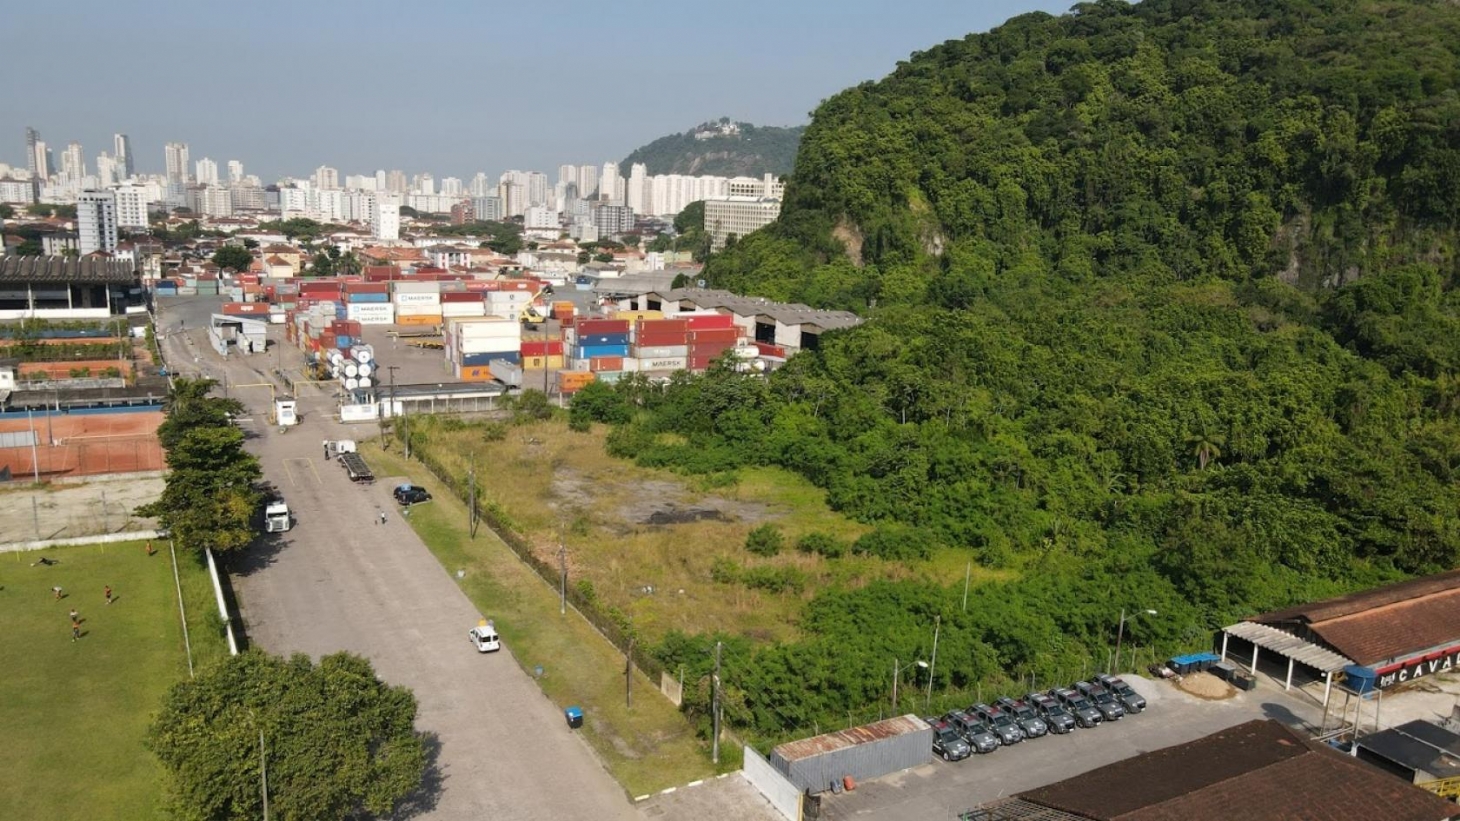 Santos recebe terreno para construir moradias a 300 famílias | Jornal da Orla